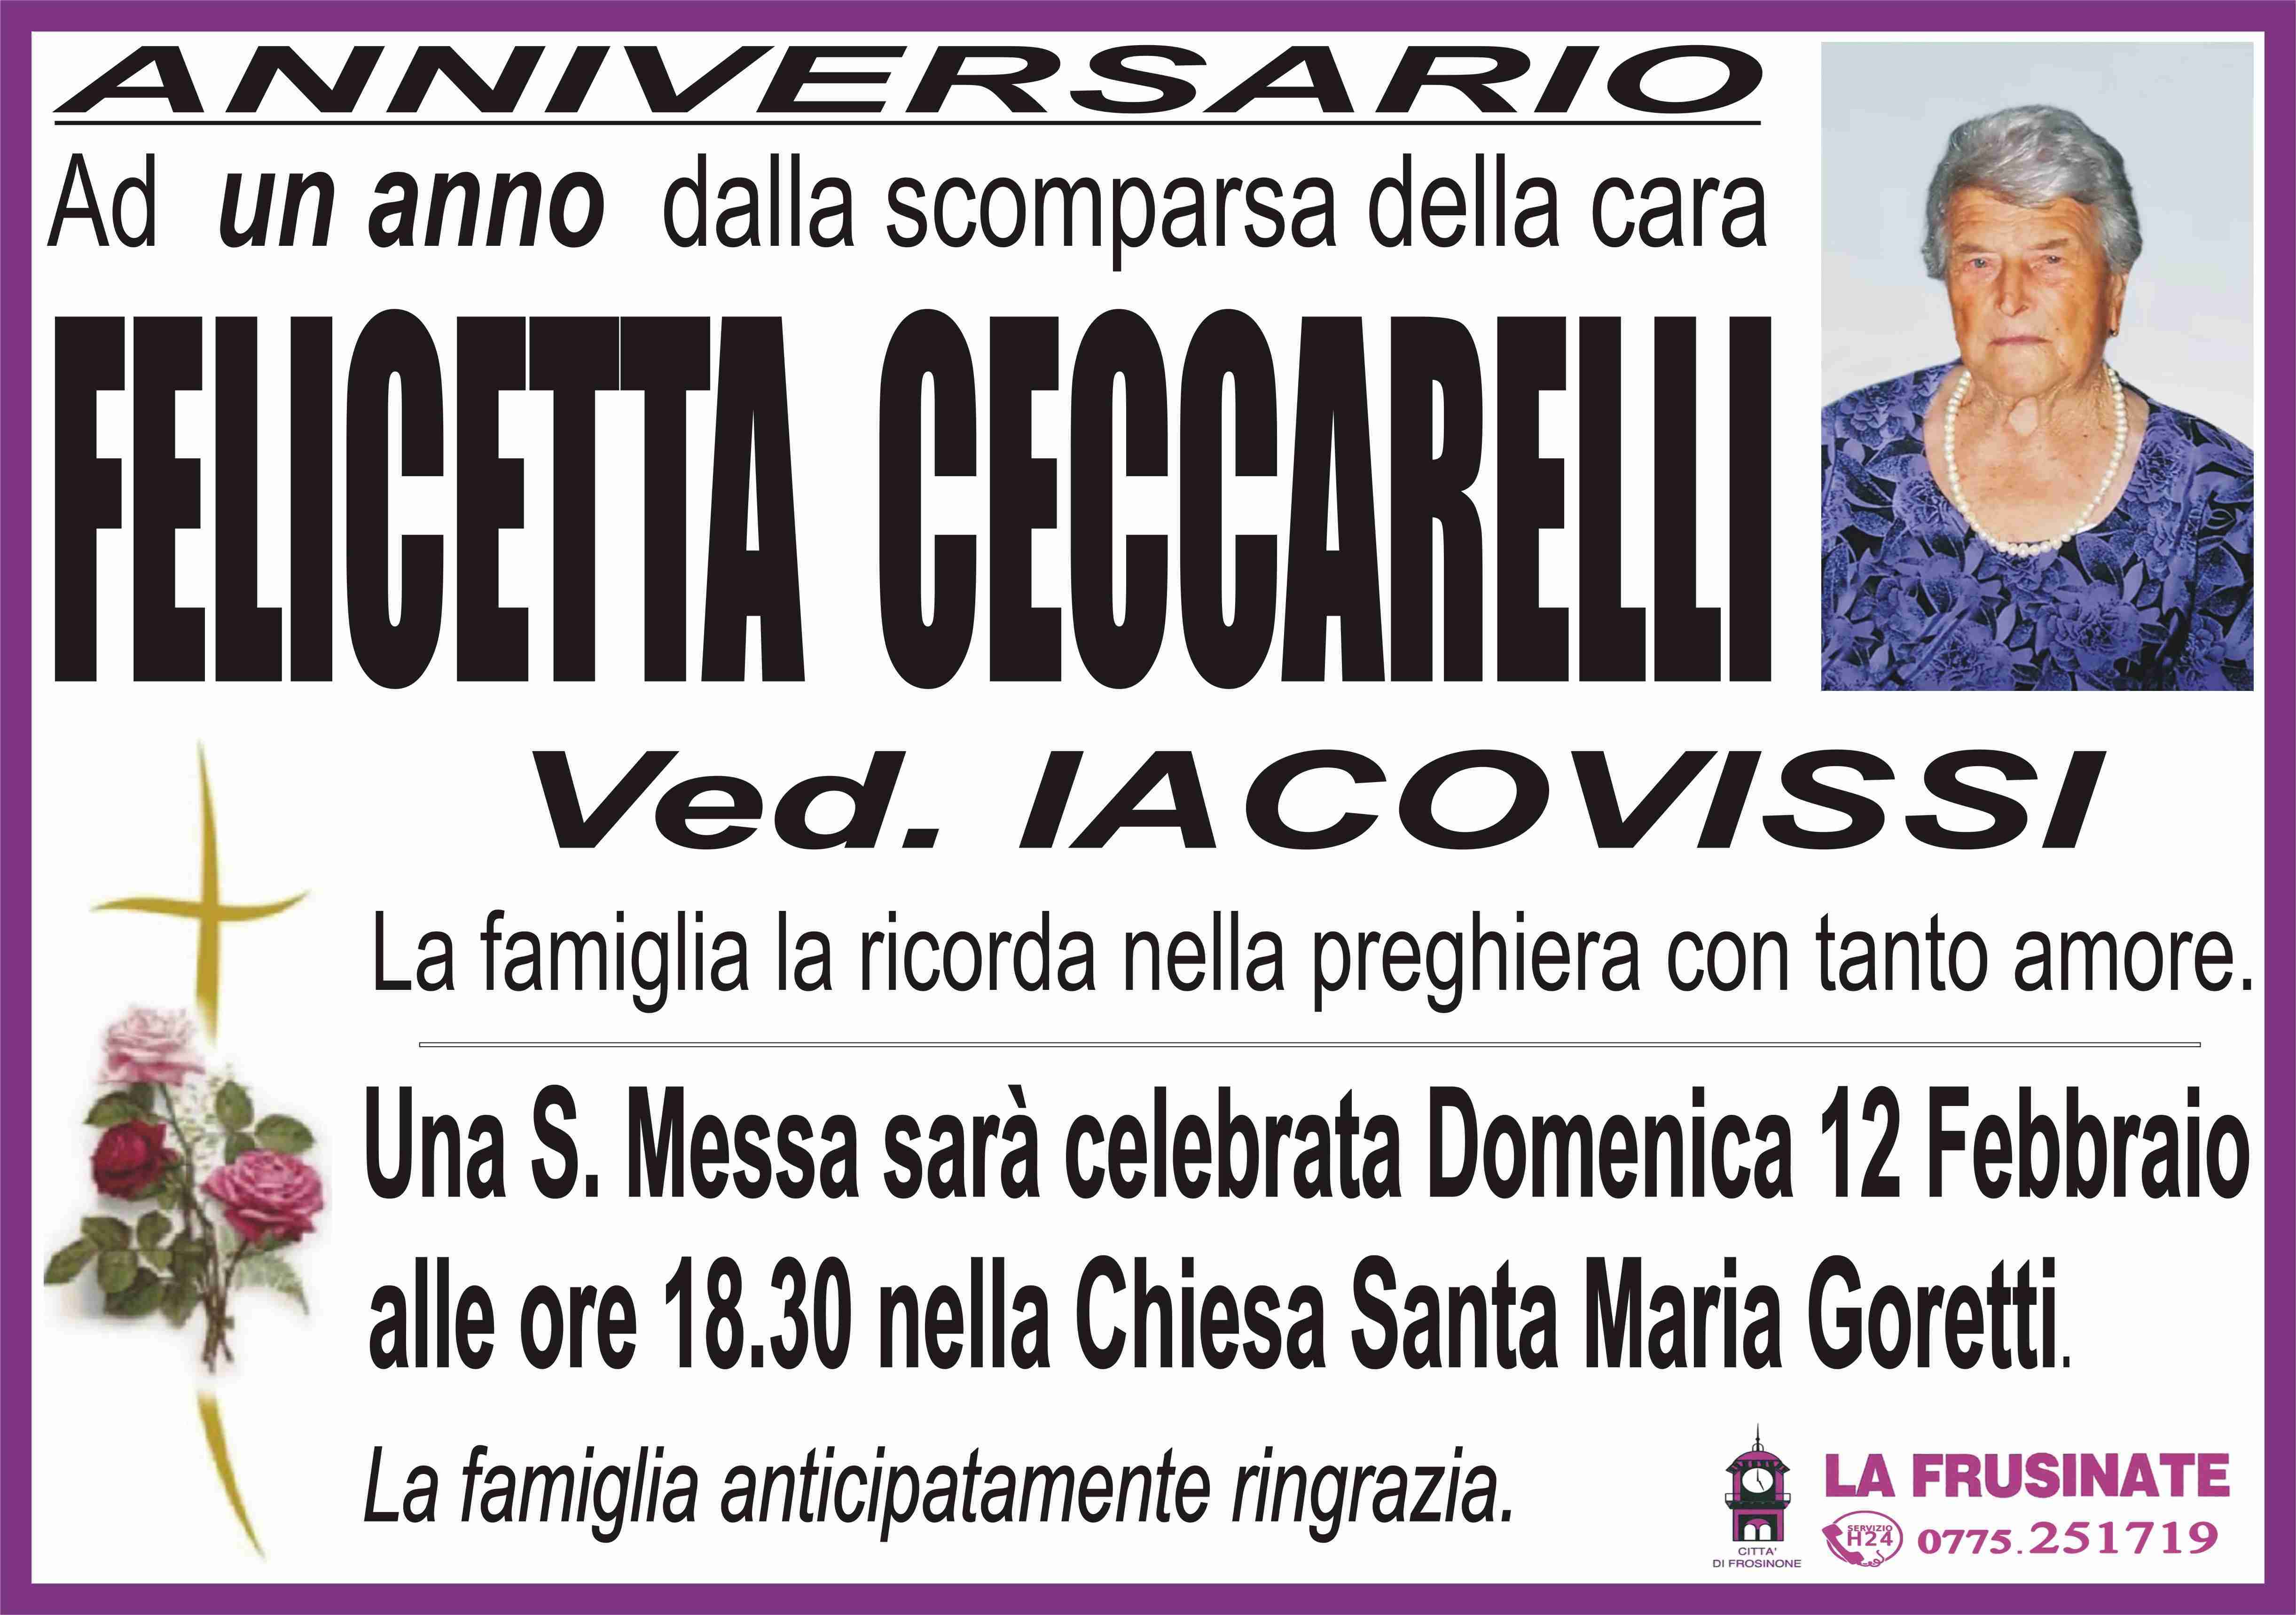 Felicetta Ceccarelli